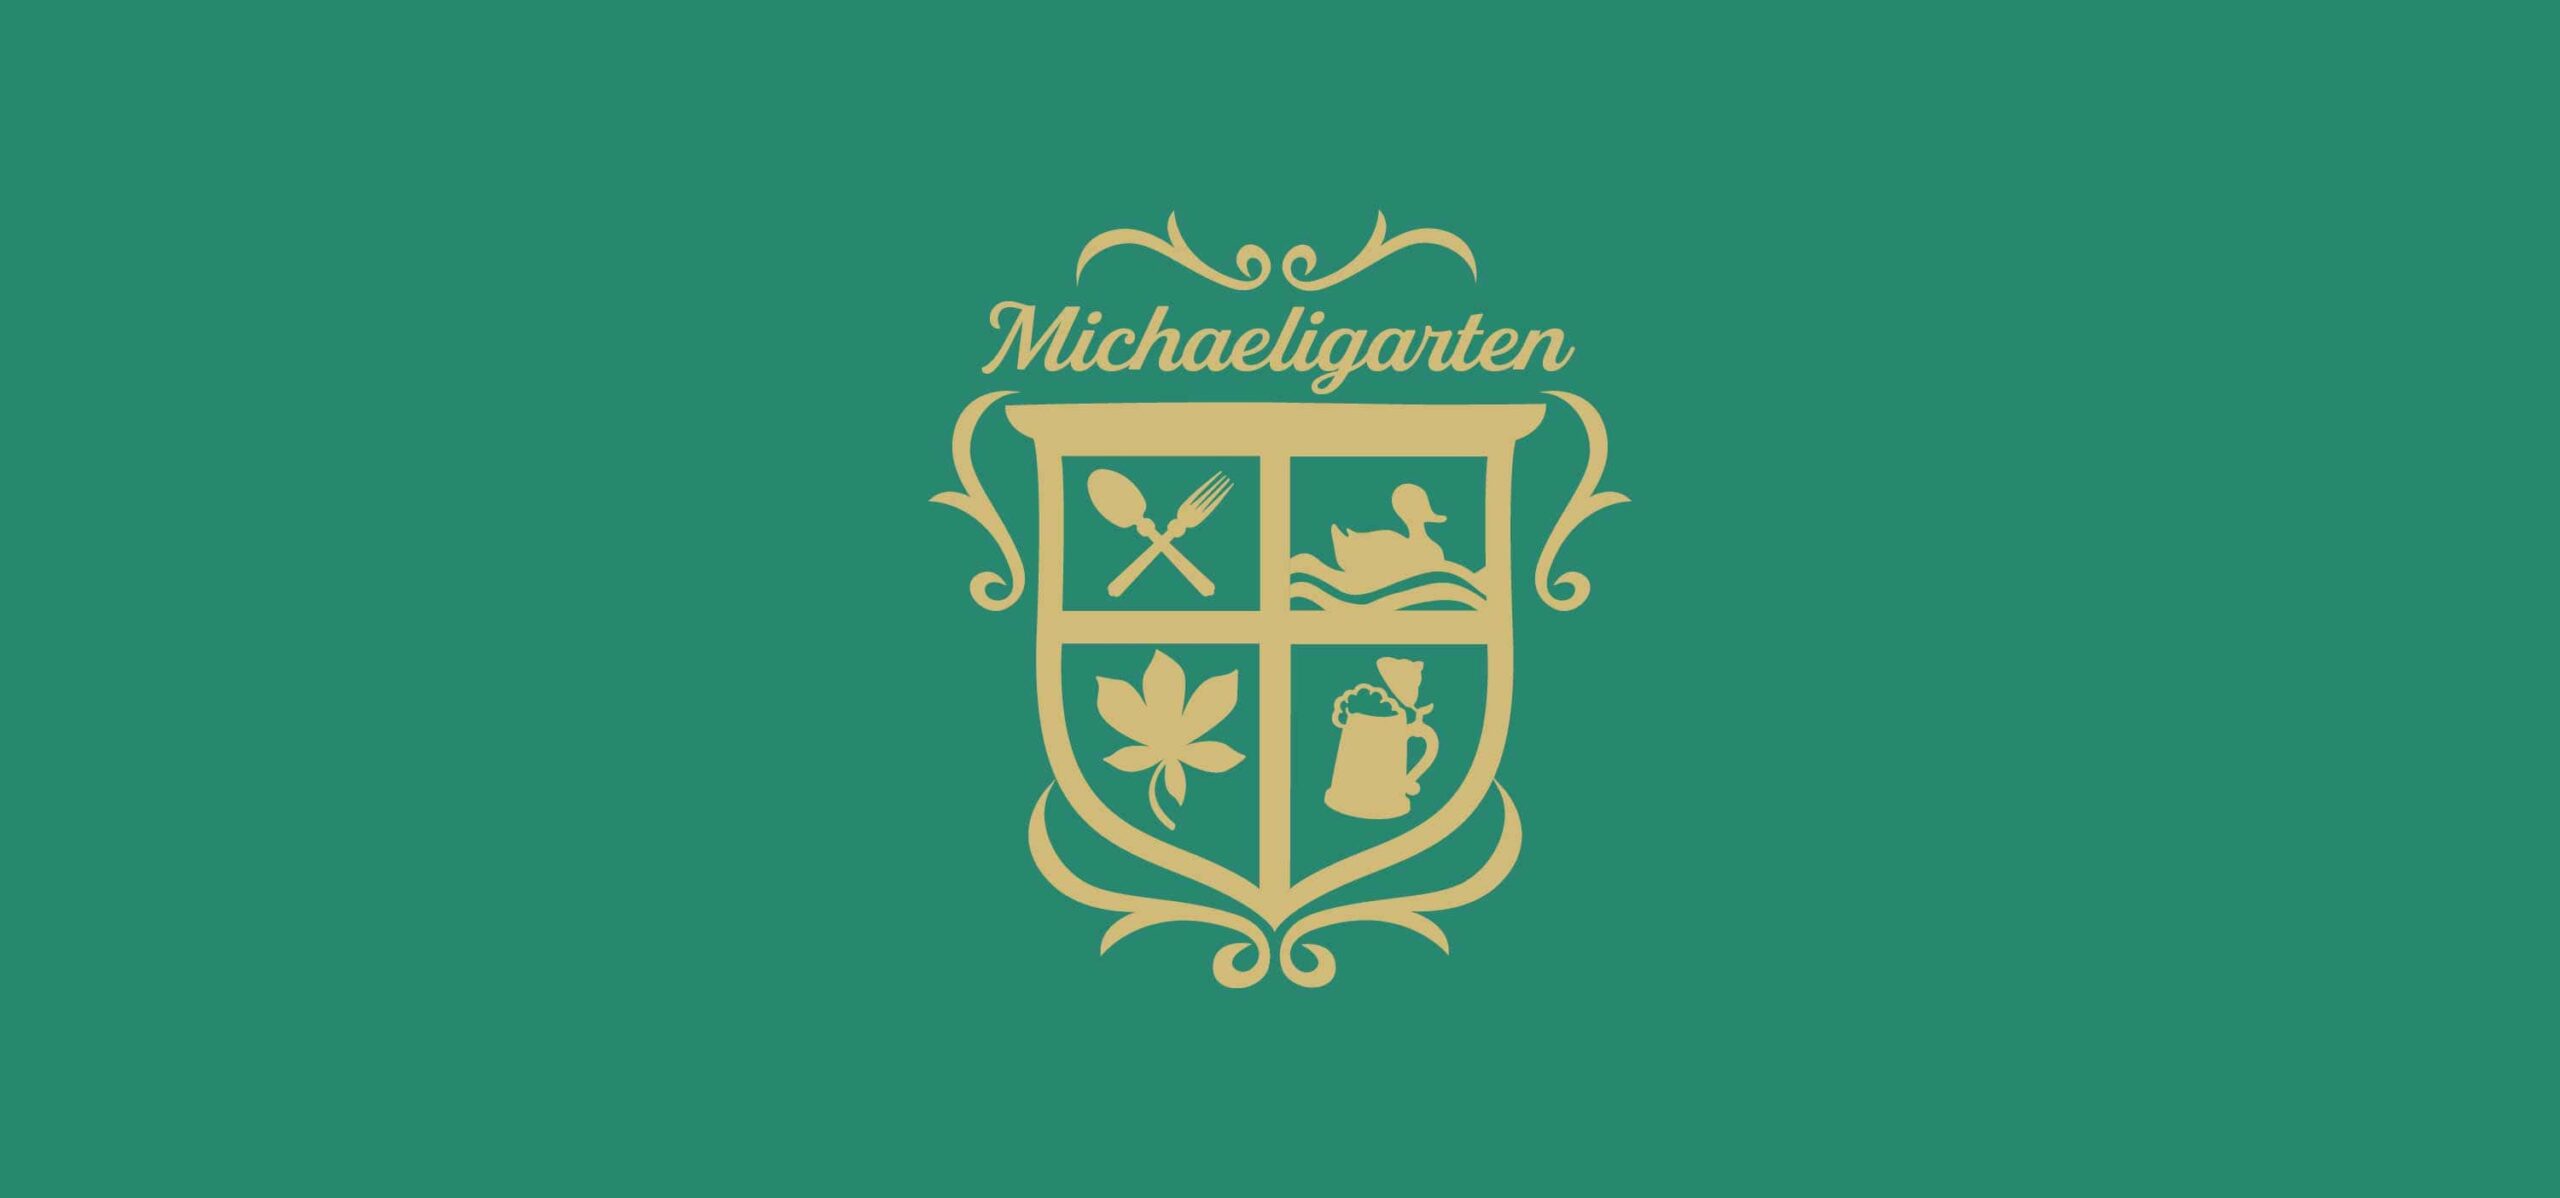 Header mit goldenem Logo auf grünem Hintergrund der Gastronomie Michaeligarten München.